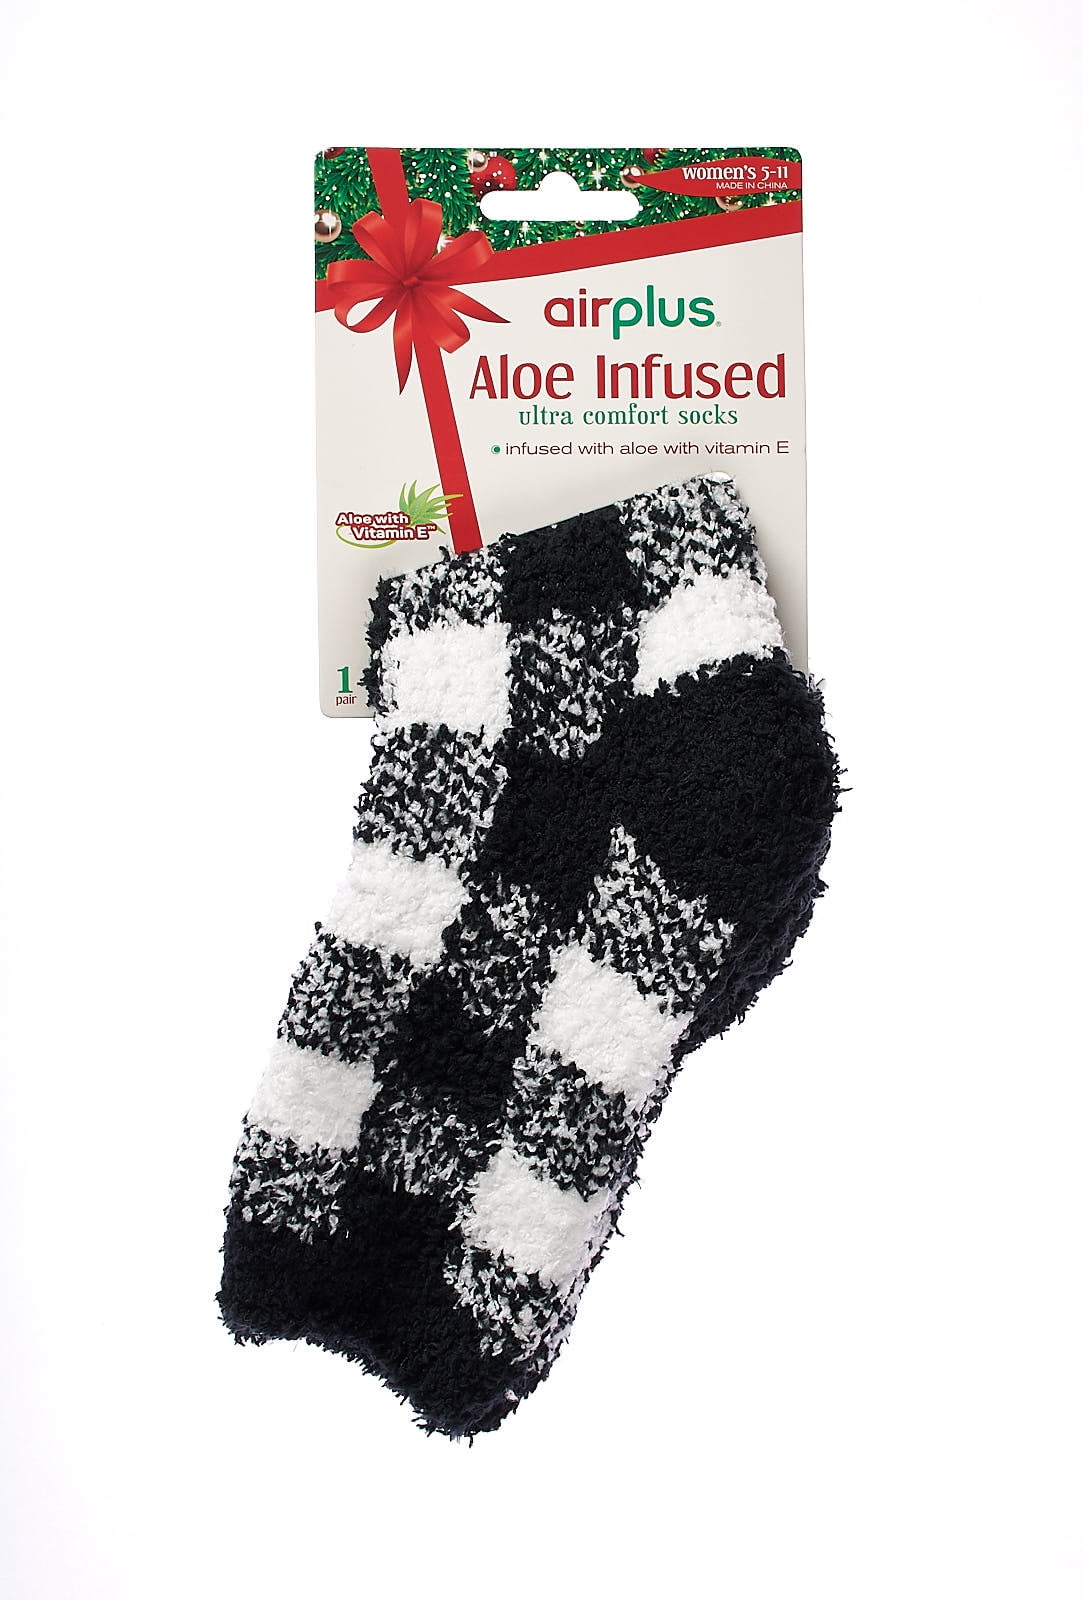 Airplus Aloe Infused Moisturizing Socks - 1 ea